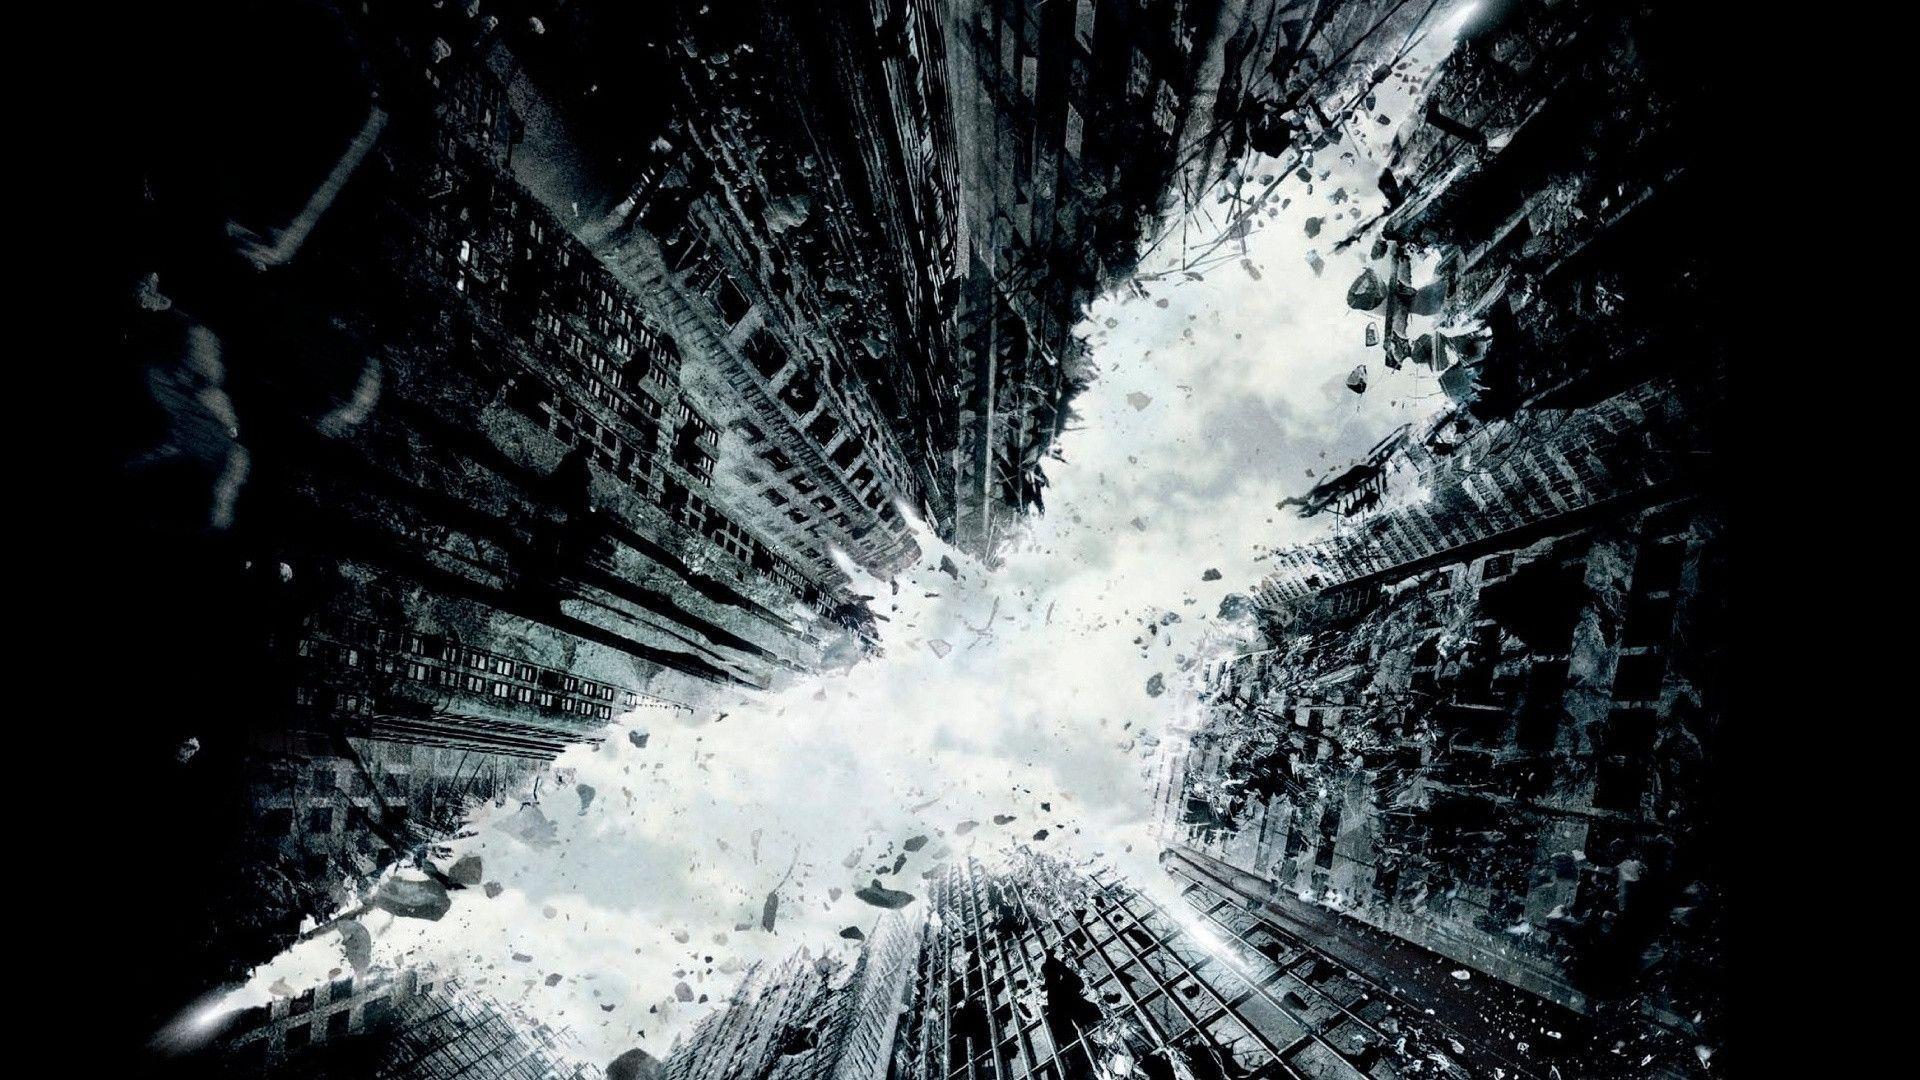 The Dark Knight Rises 2012 Wallpaper Hd Batman 3 Batman HD Free